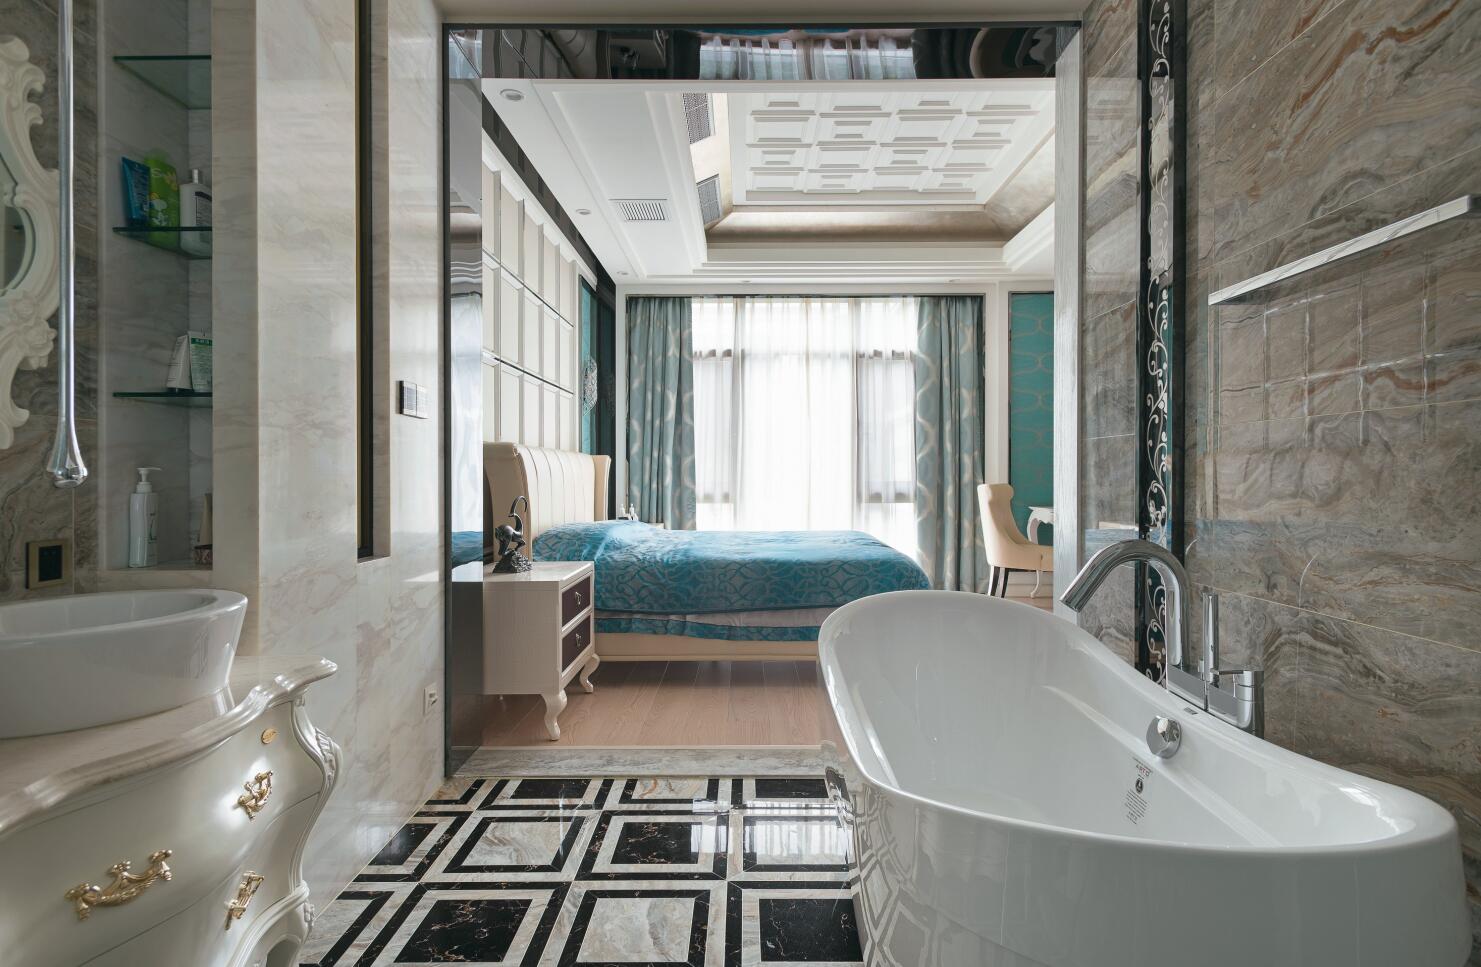 别墅 古典 腾龙设计 卫生间图片来自腾龙设计在提香别墅装修欧式风格尽显典雅风的分享